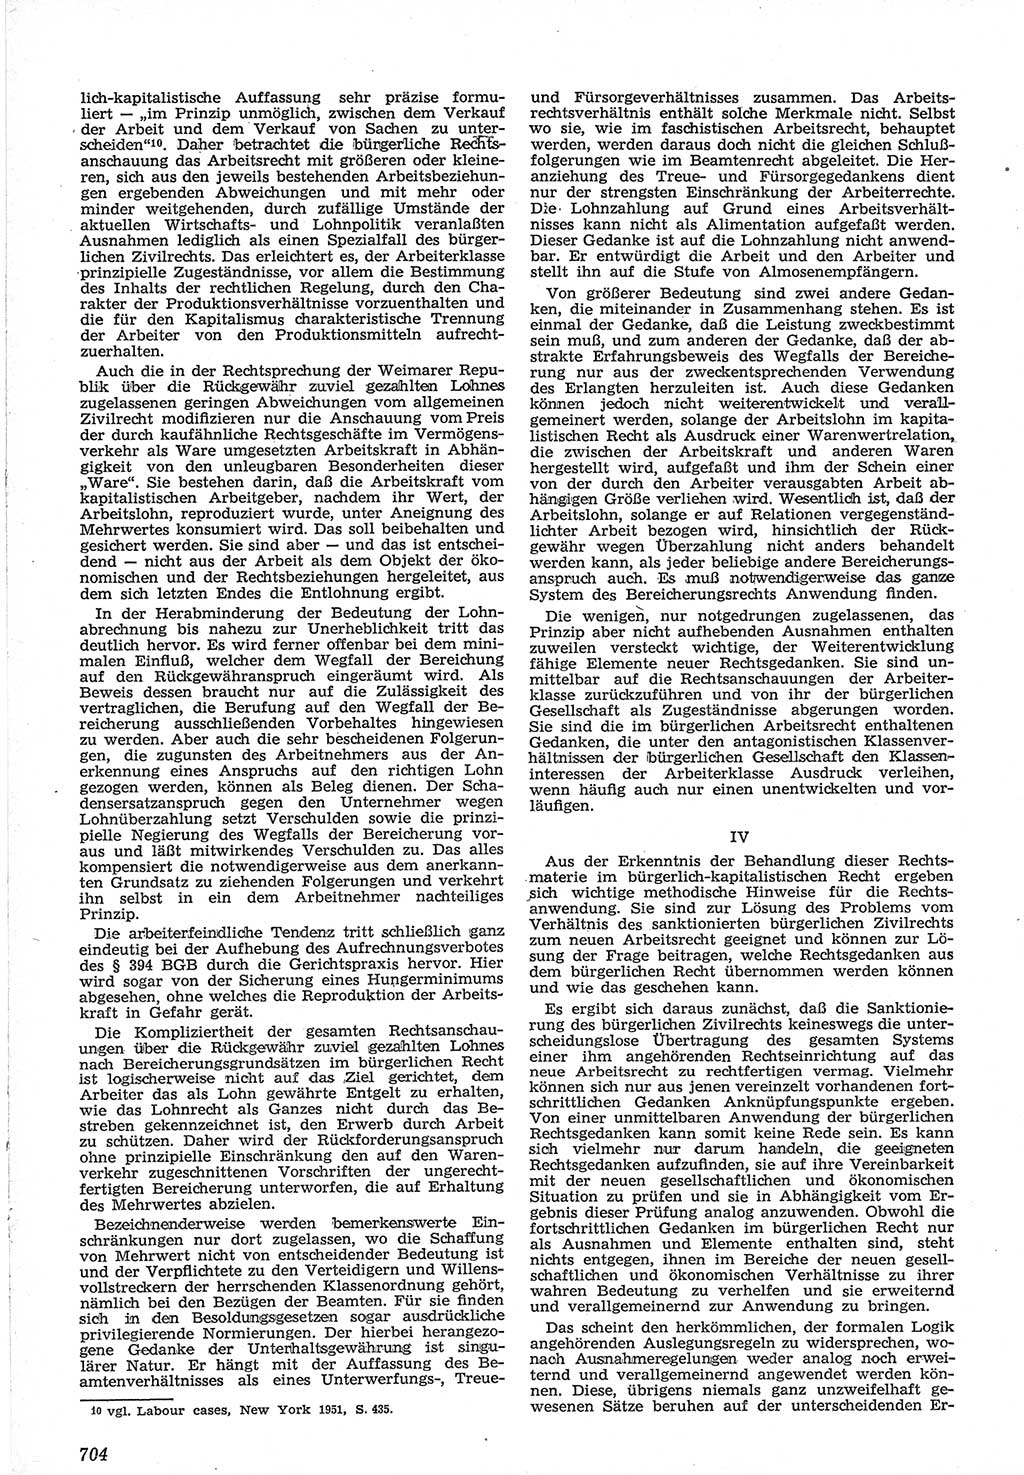 Neue Justiz (NJ), Zeitschrift für Recht und Rechtswissenschaft [Deutsche Demokratische Republik (DDR)], 12. Jahrgang 1958, Seite 704 (NJ DDR 1958, S. 704)